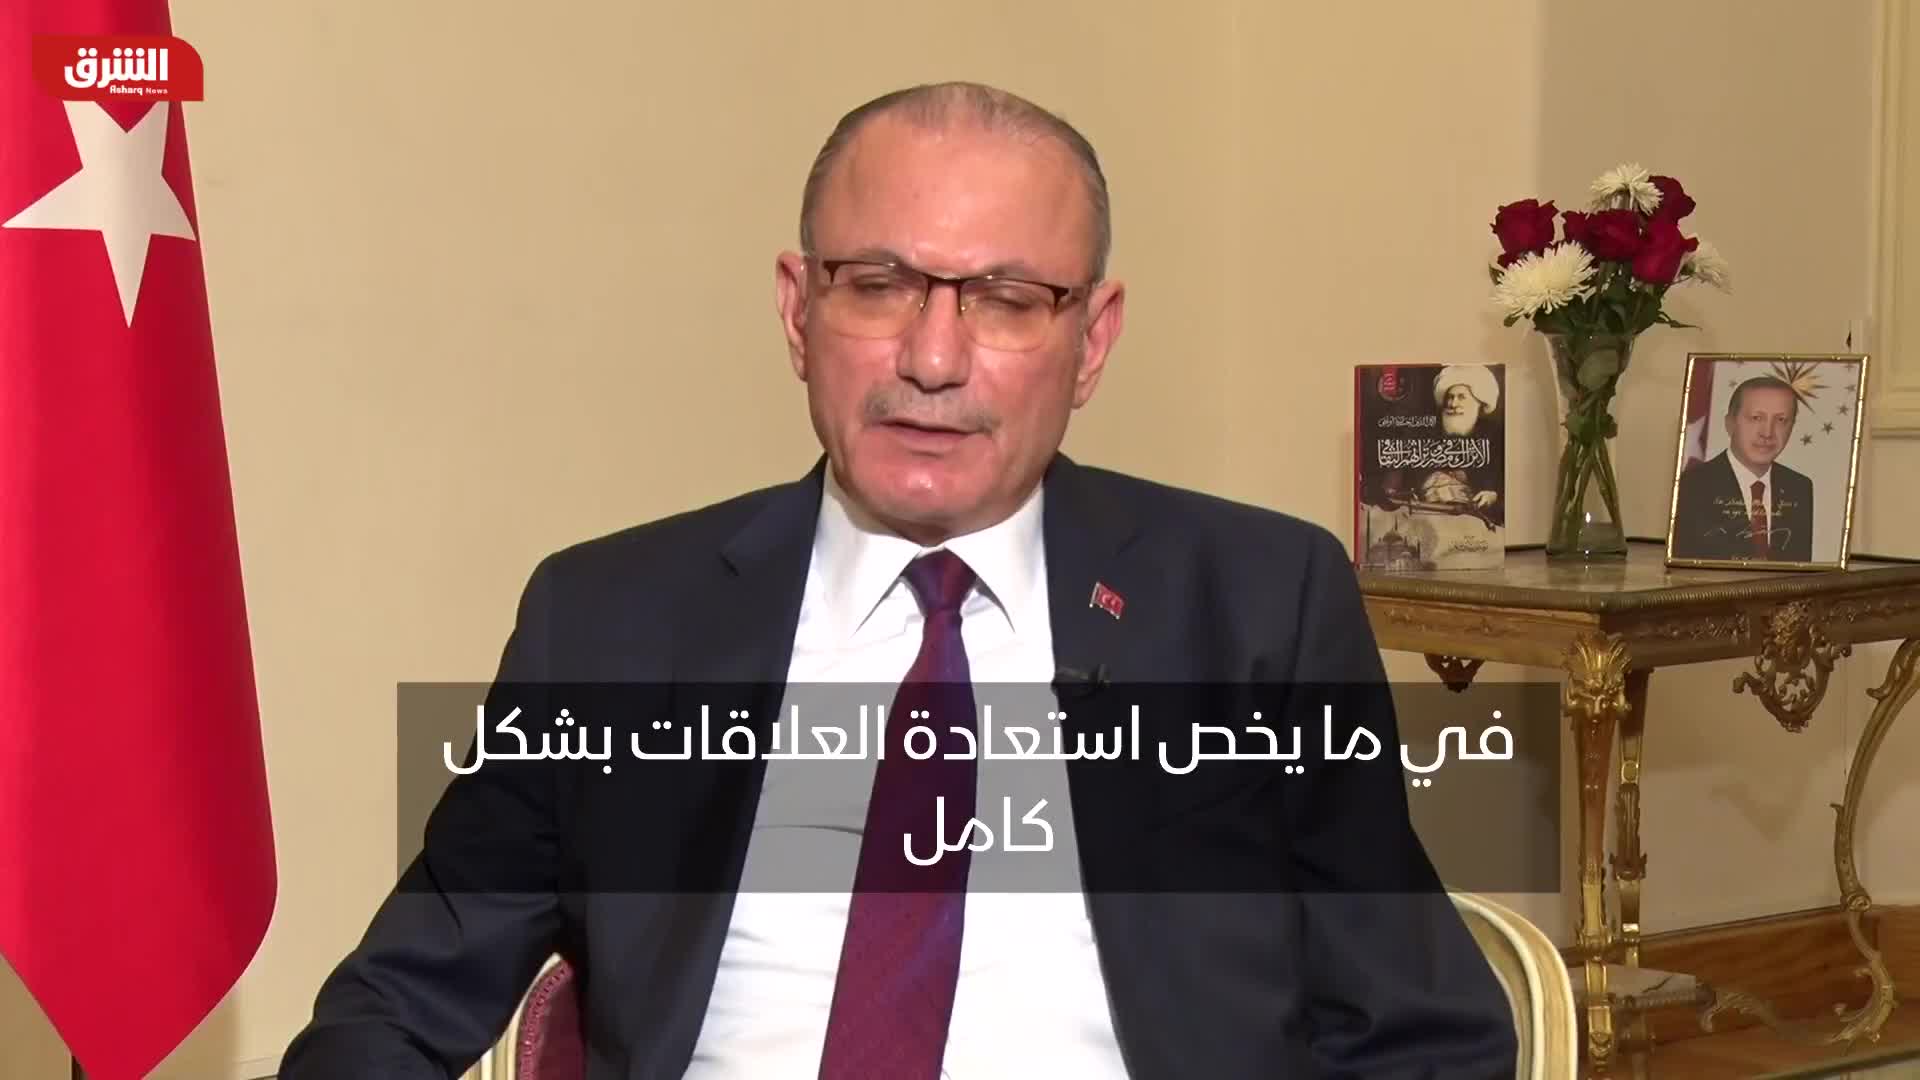 موطلو شن: مصر وتركيا تعملان على تقوية العلاقات واستعادة الثقة بشكل كامل